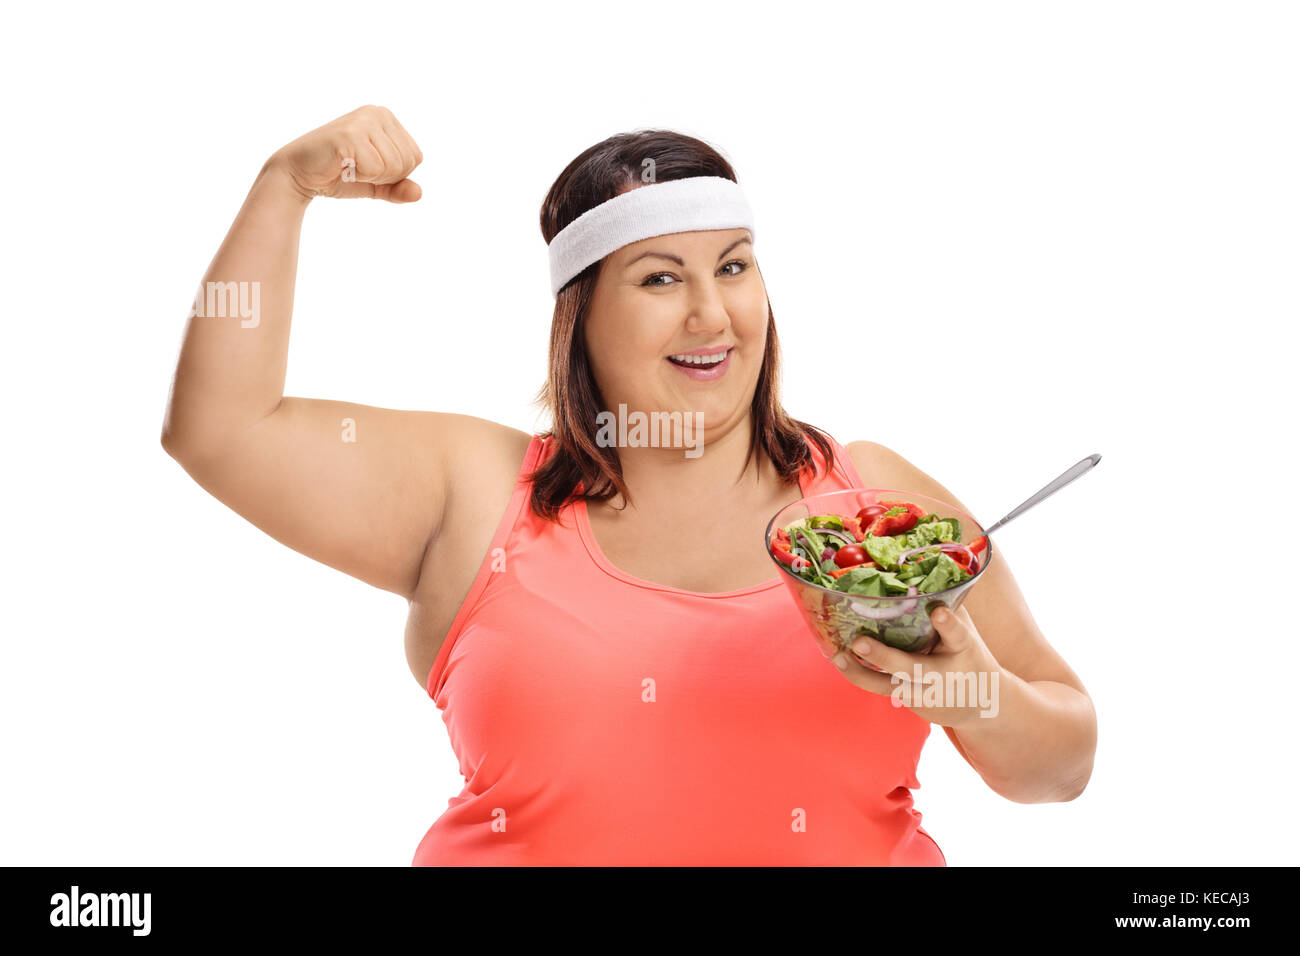 Übergewichtige Frau mit einem Salat- und Biegungsspiel Ihr bicep auf weißem Hintergrund Stockfoto